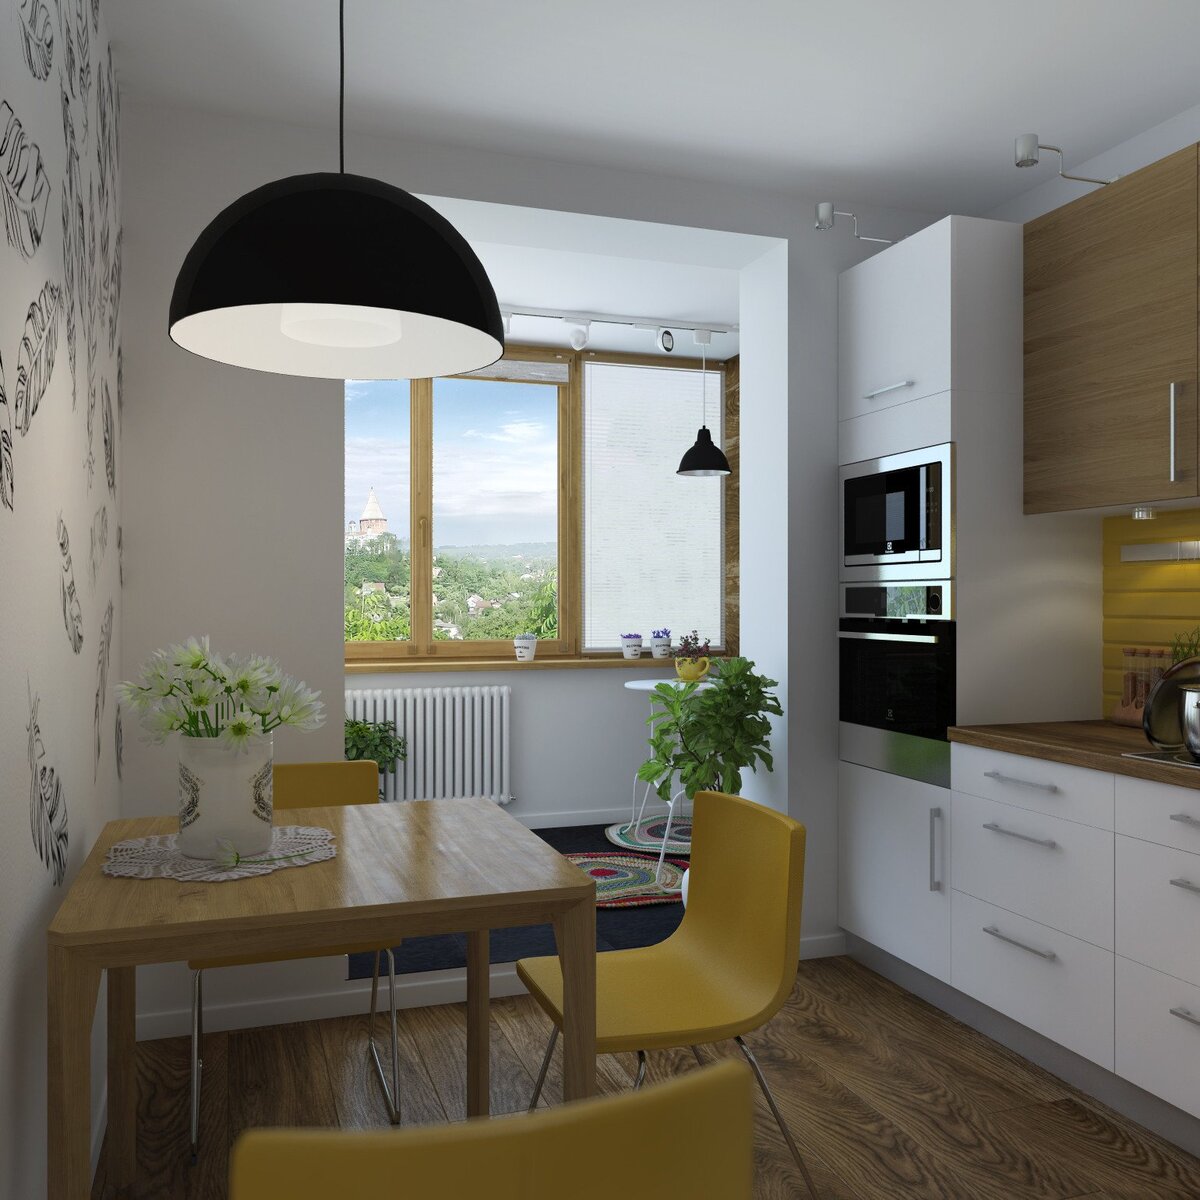 дизайн кухни 9 кв м с балконом | Современные белые кухни, Дизайн, Планы кухни